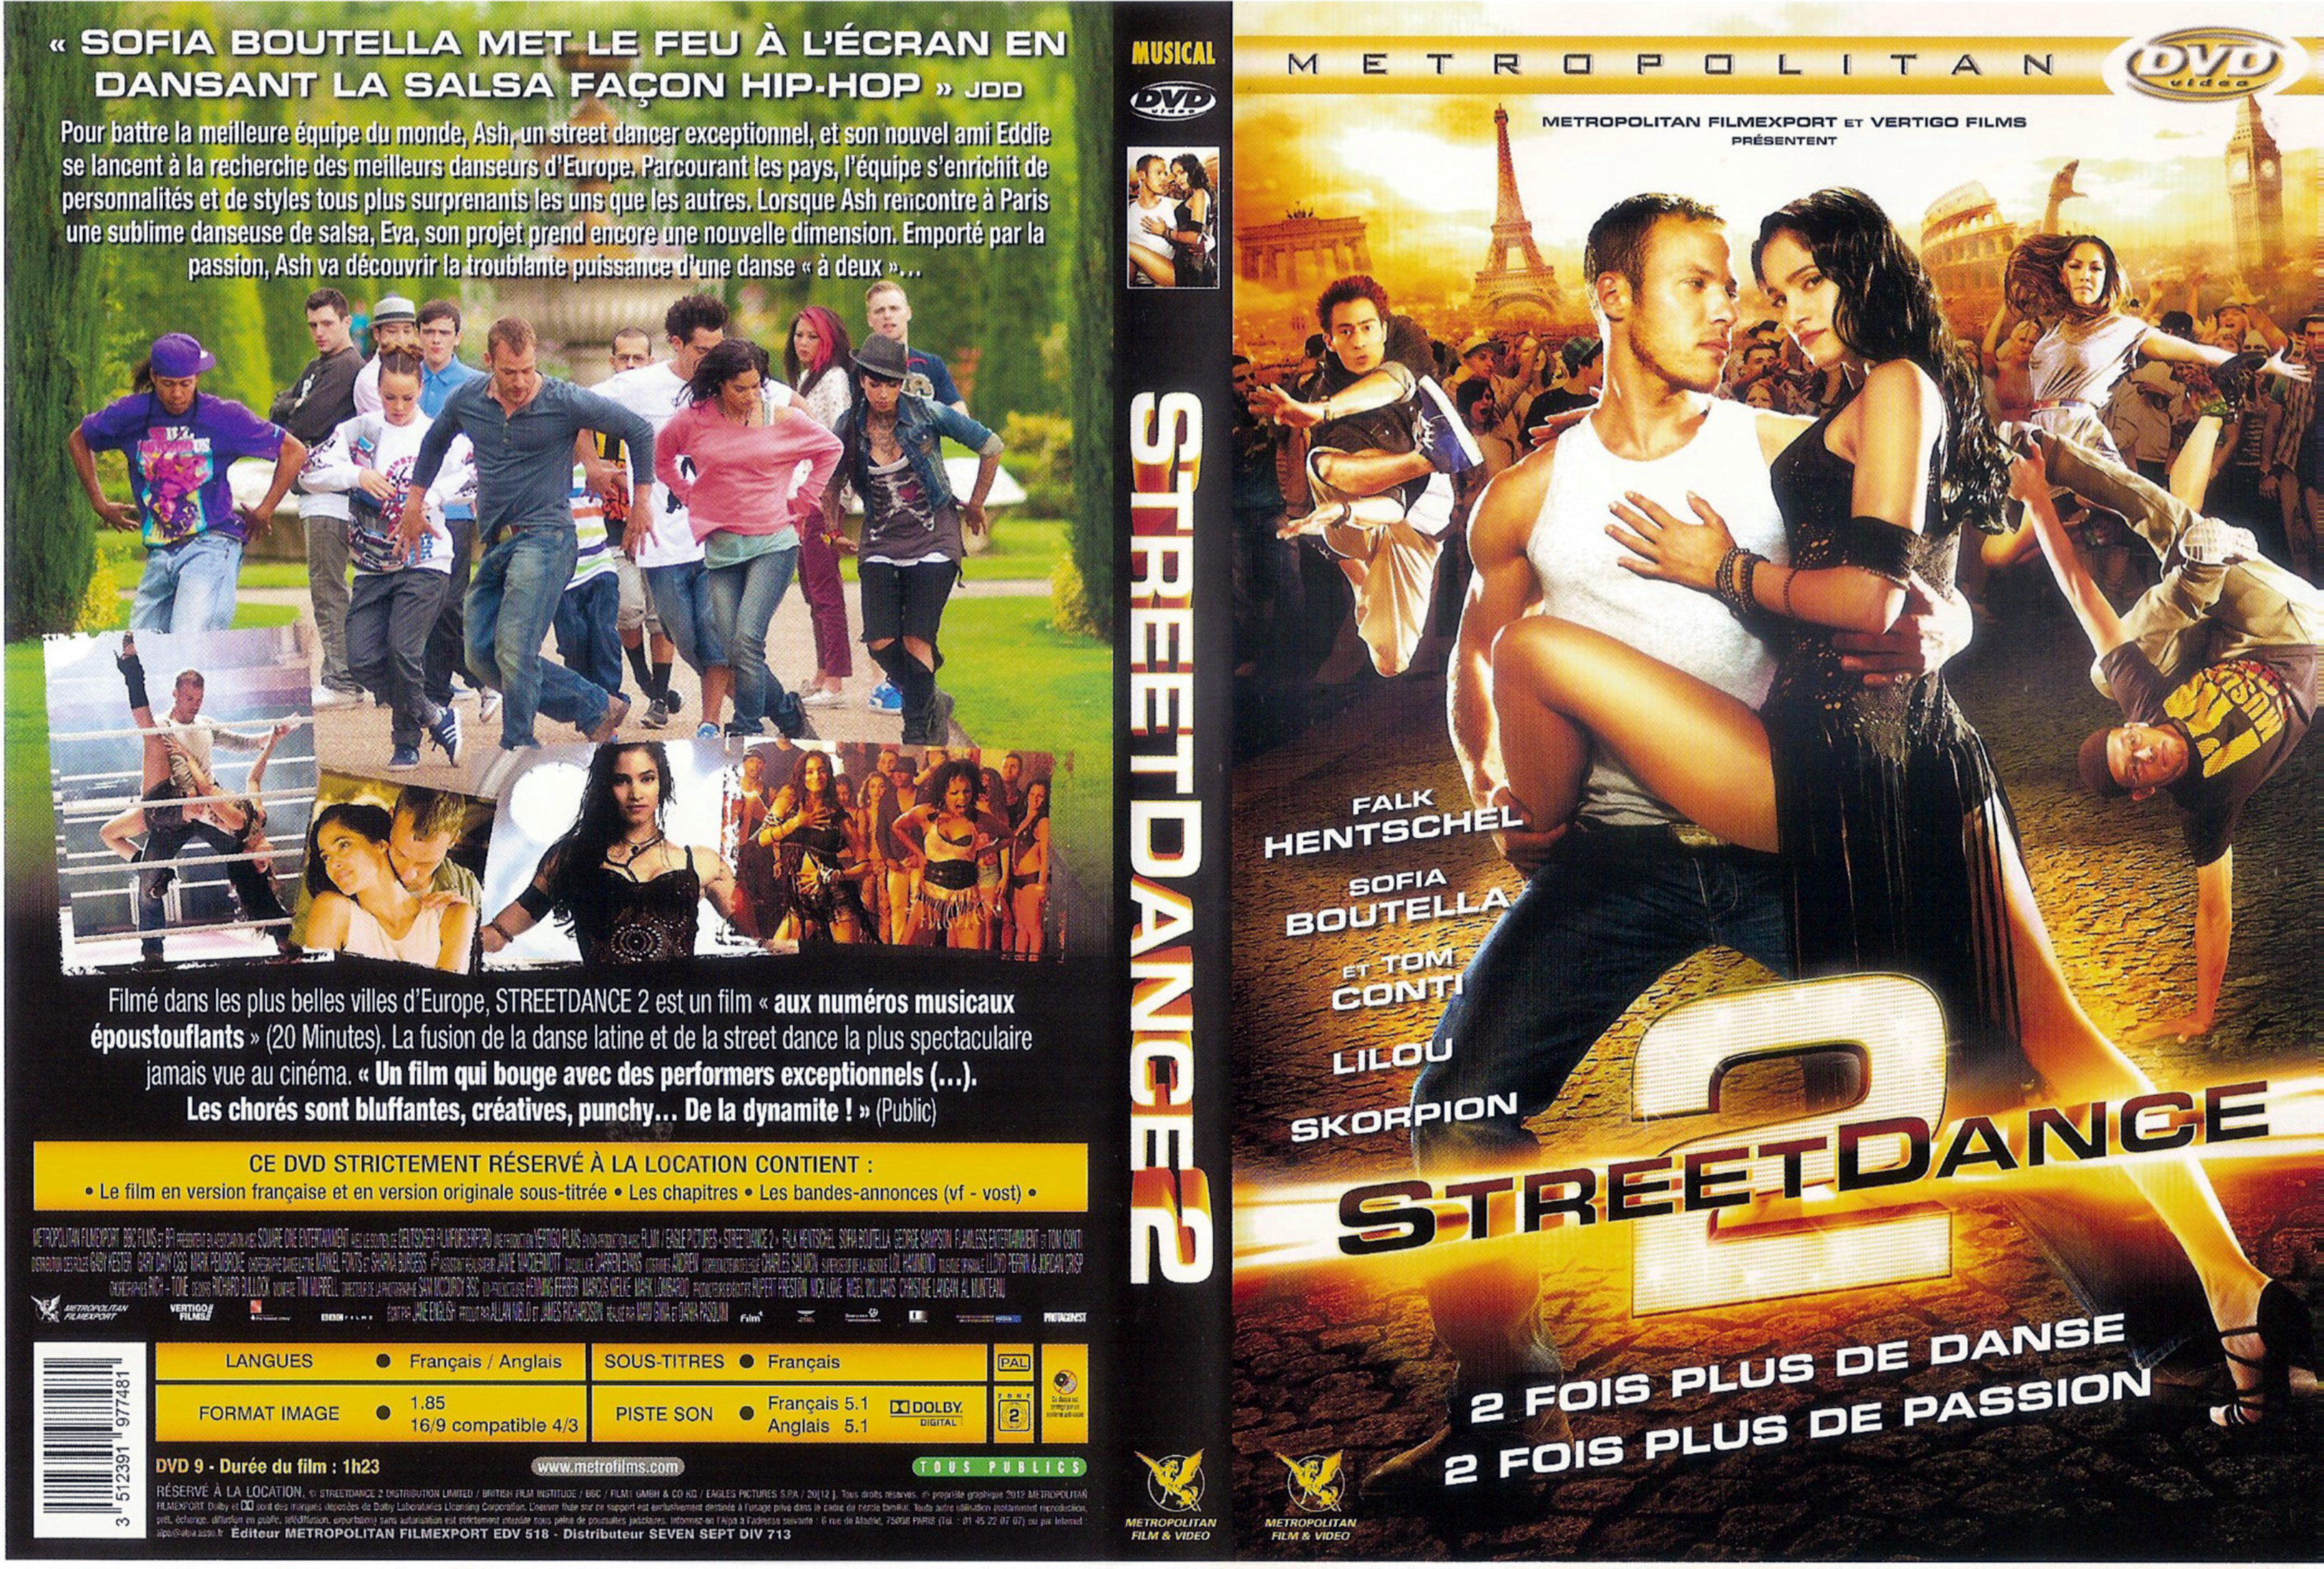 Jaquette DVD Street dance 2